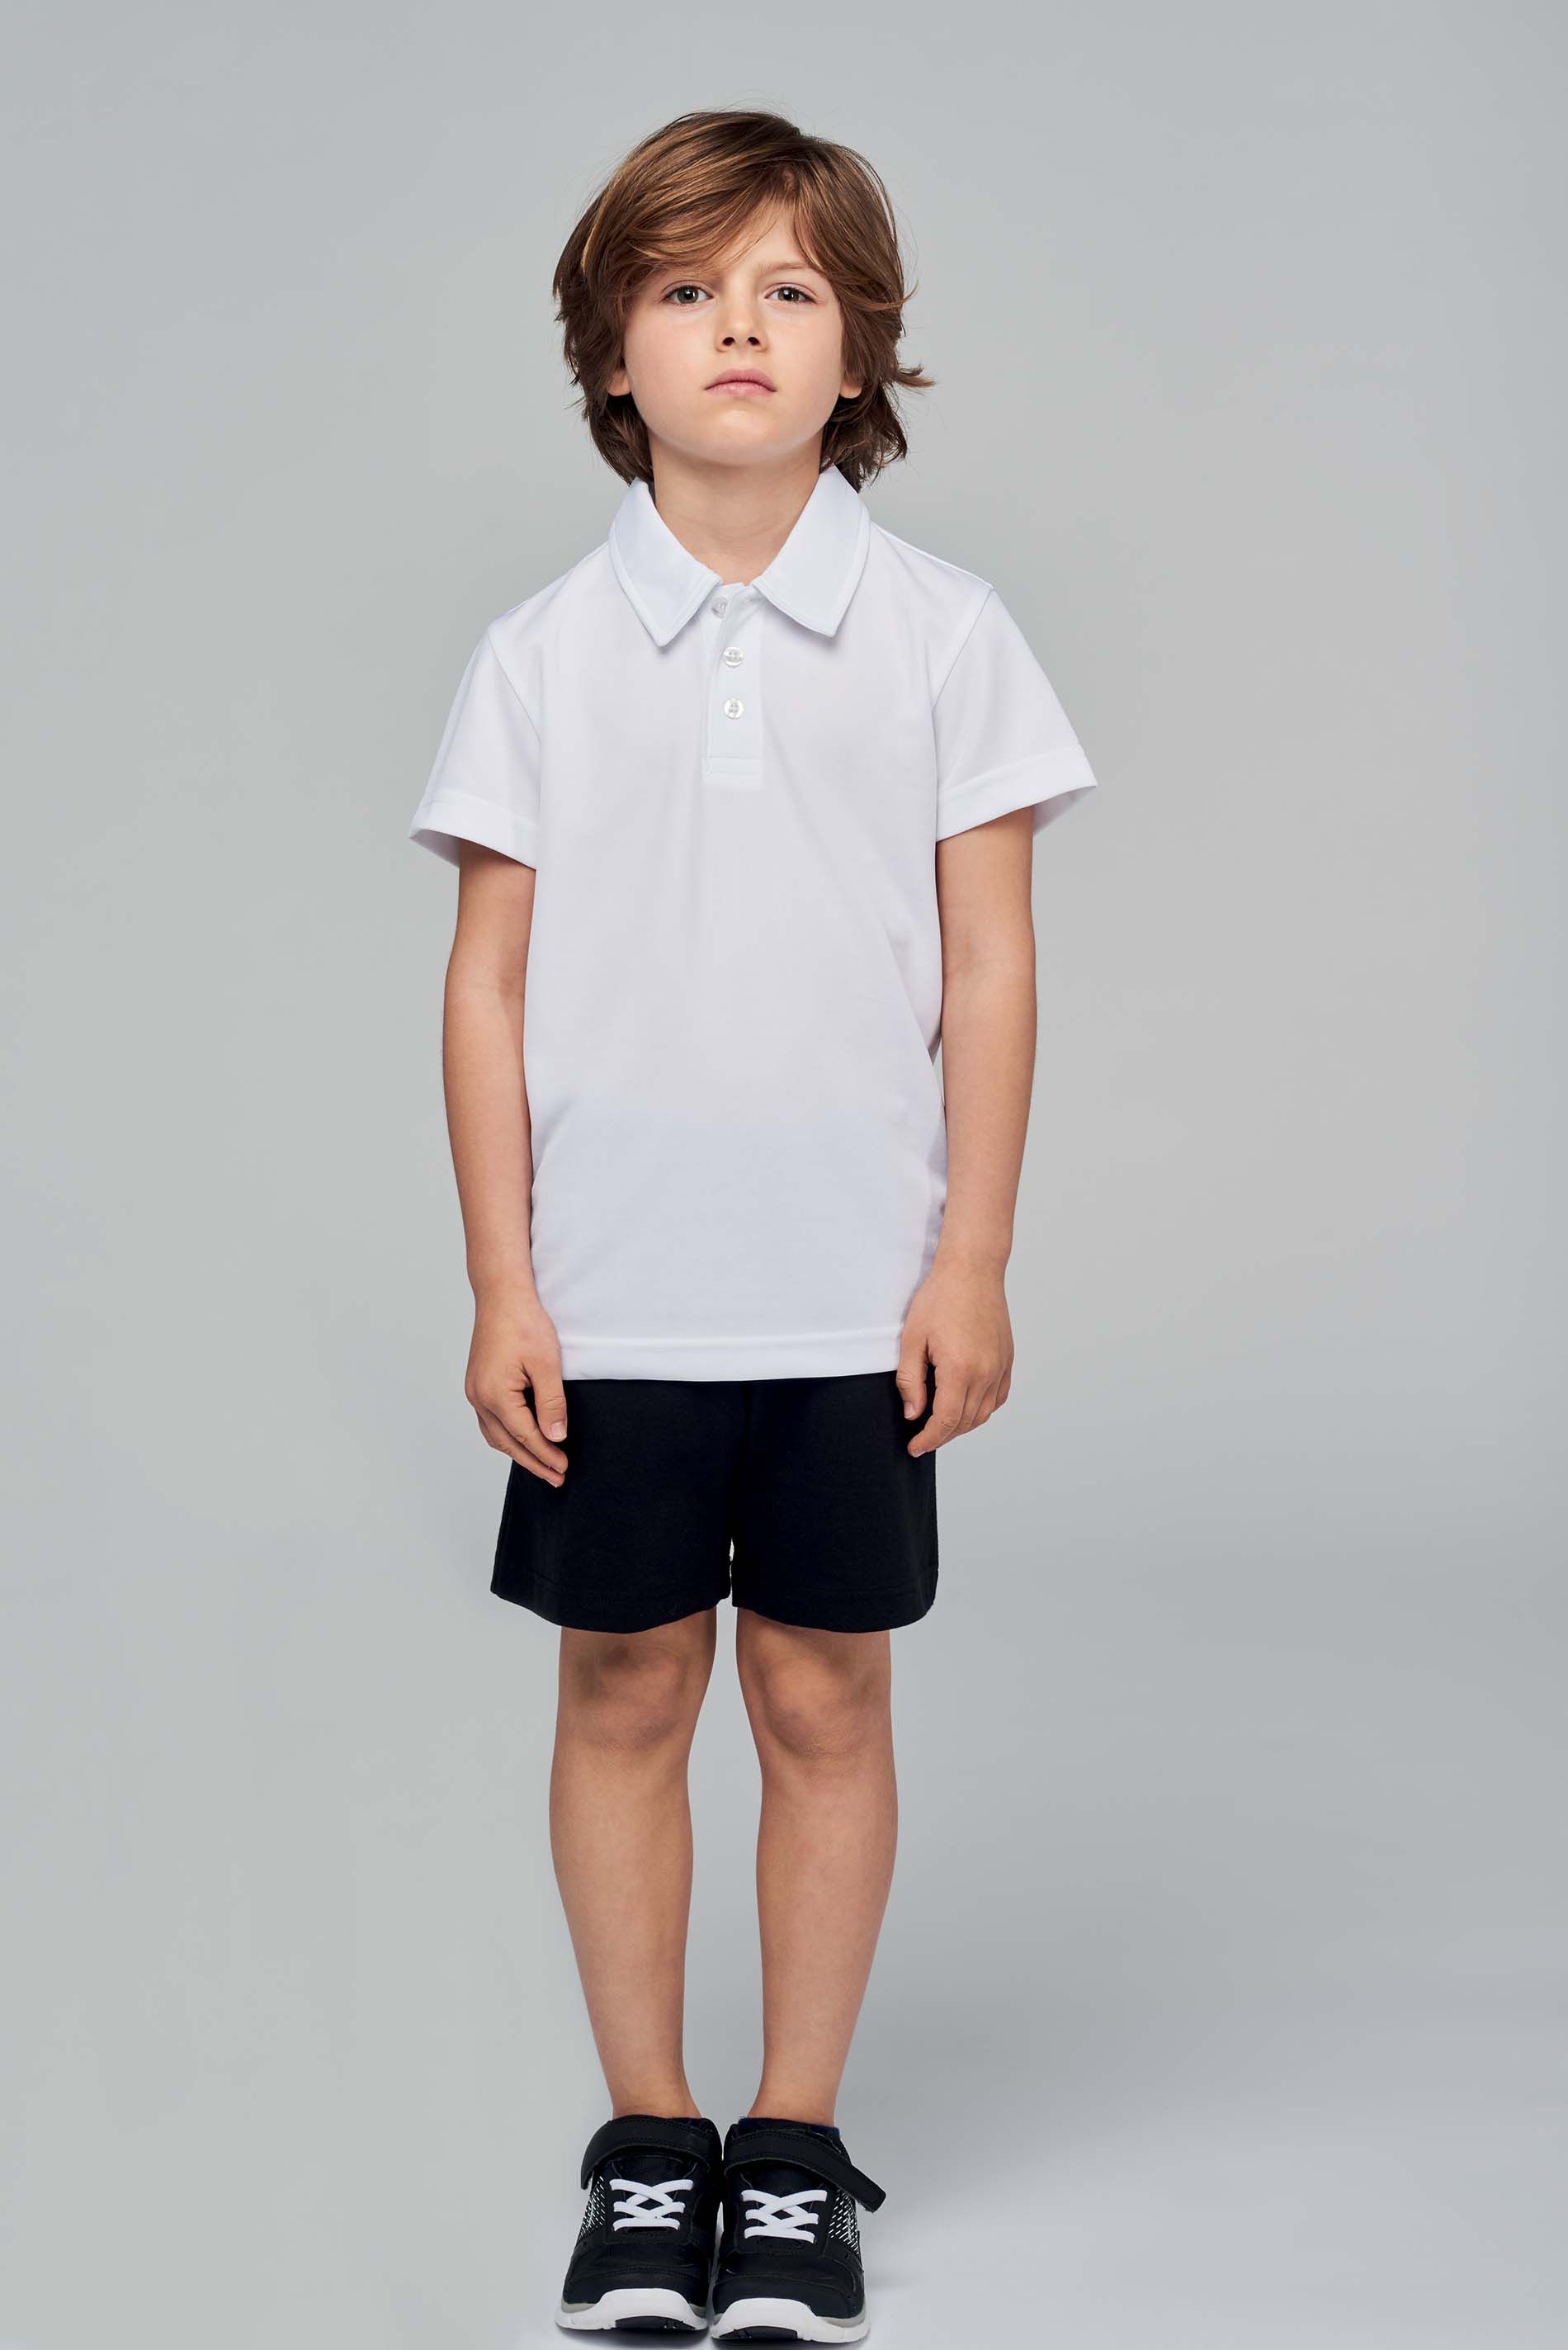 Polo enfant à manches courtes à personnaliser en ligne chez Textile Direct